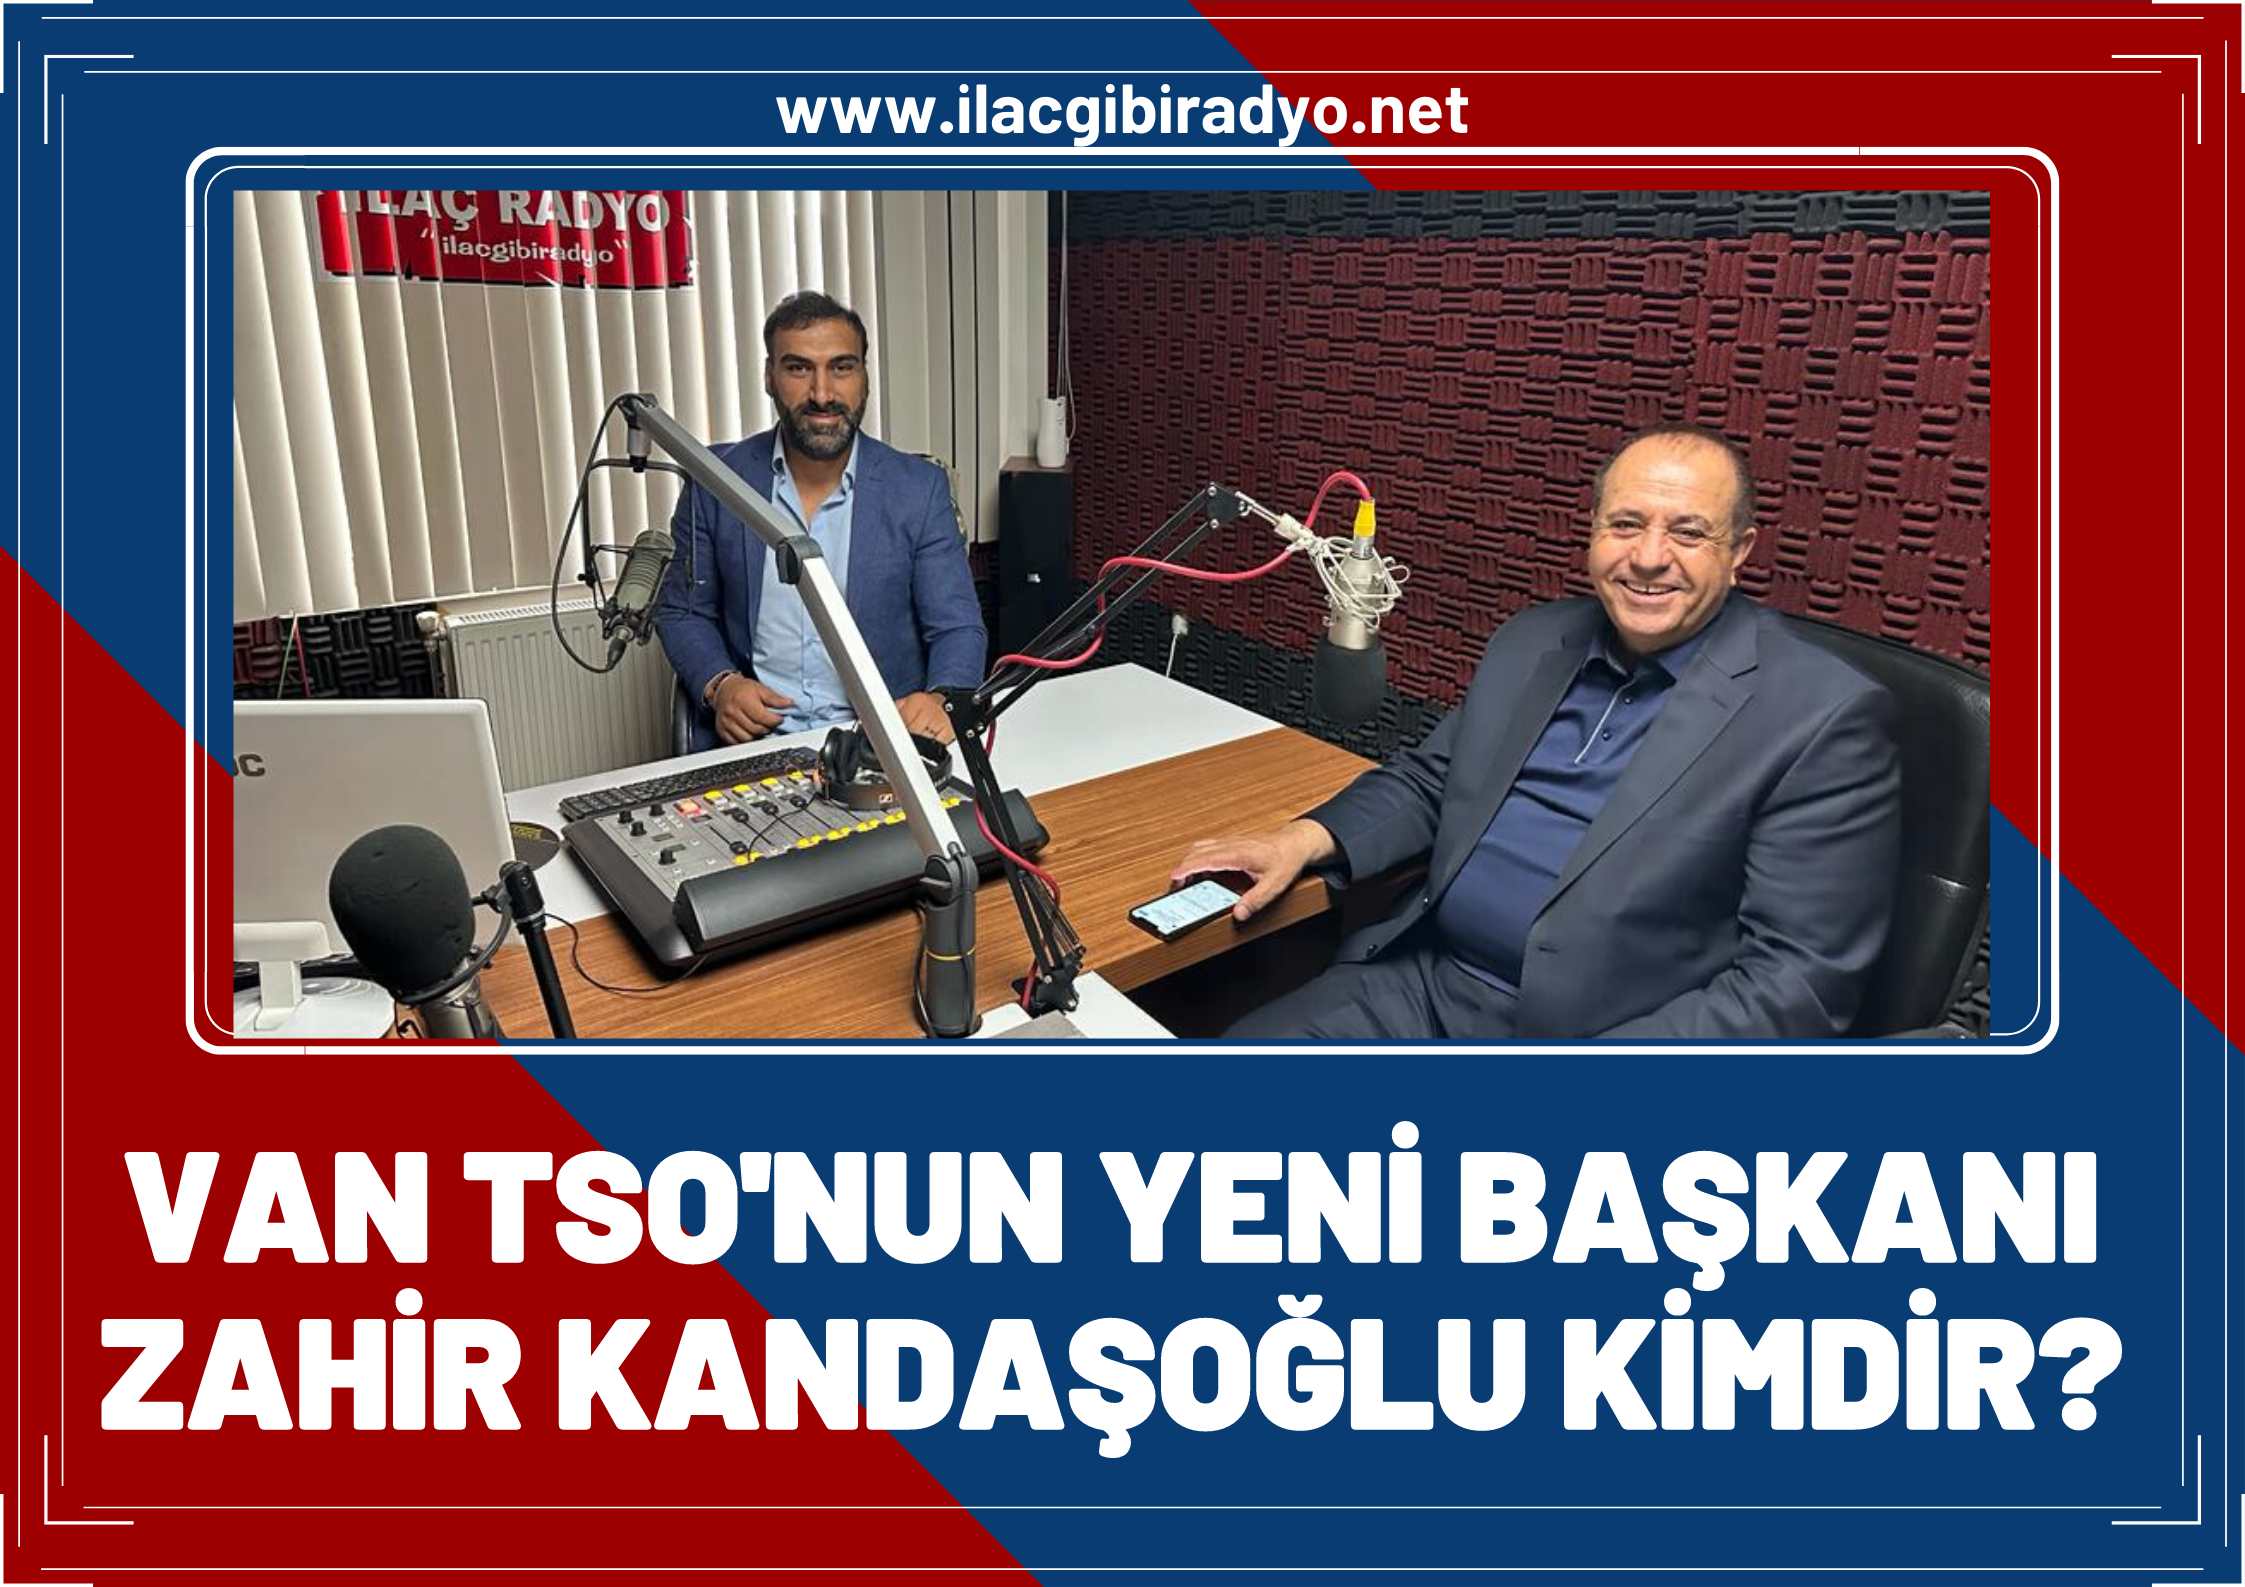 Van TSO’nun yeni Başkanı Zahir Kandaşoğlu kimdir, nerelidir? İşte Başkan Kandaşoğlu’nun özgeçmişi…